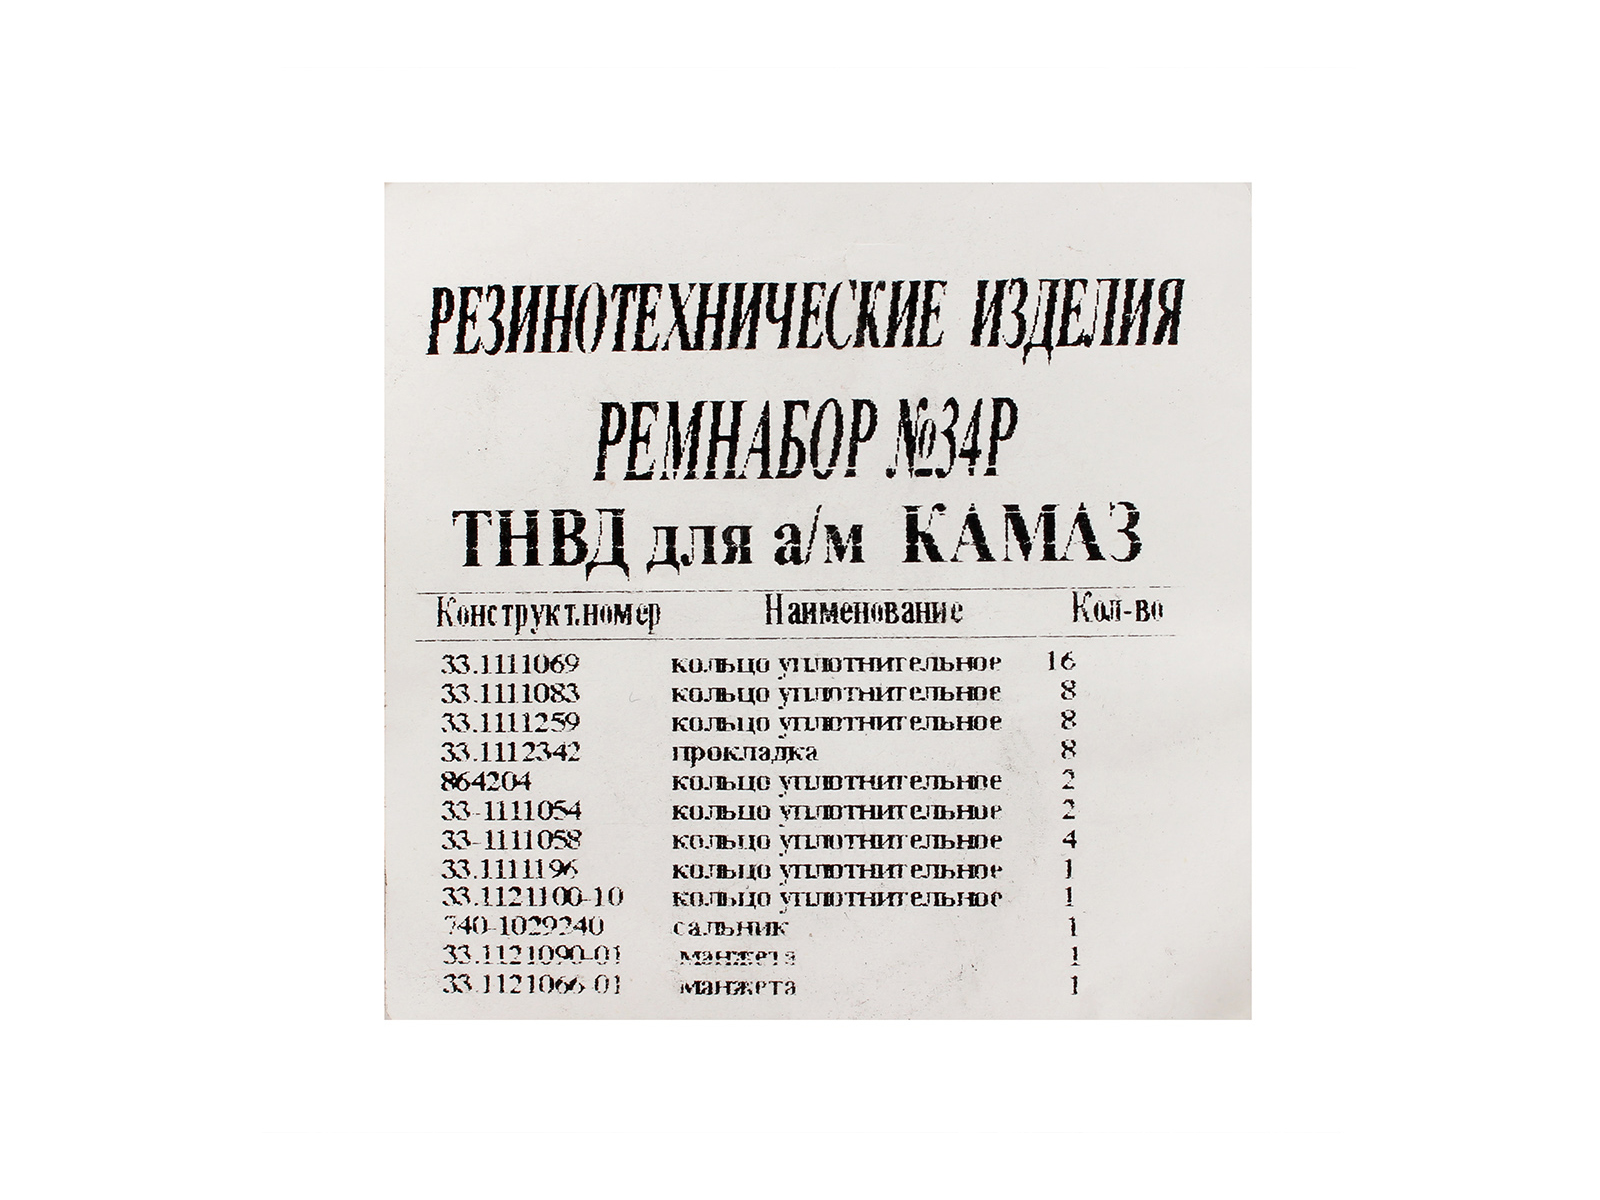 Ремкомплект КАМАЗ ТНВД кольца, манжеты 14 позиций/56 наименований фотография №3